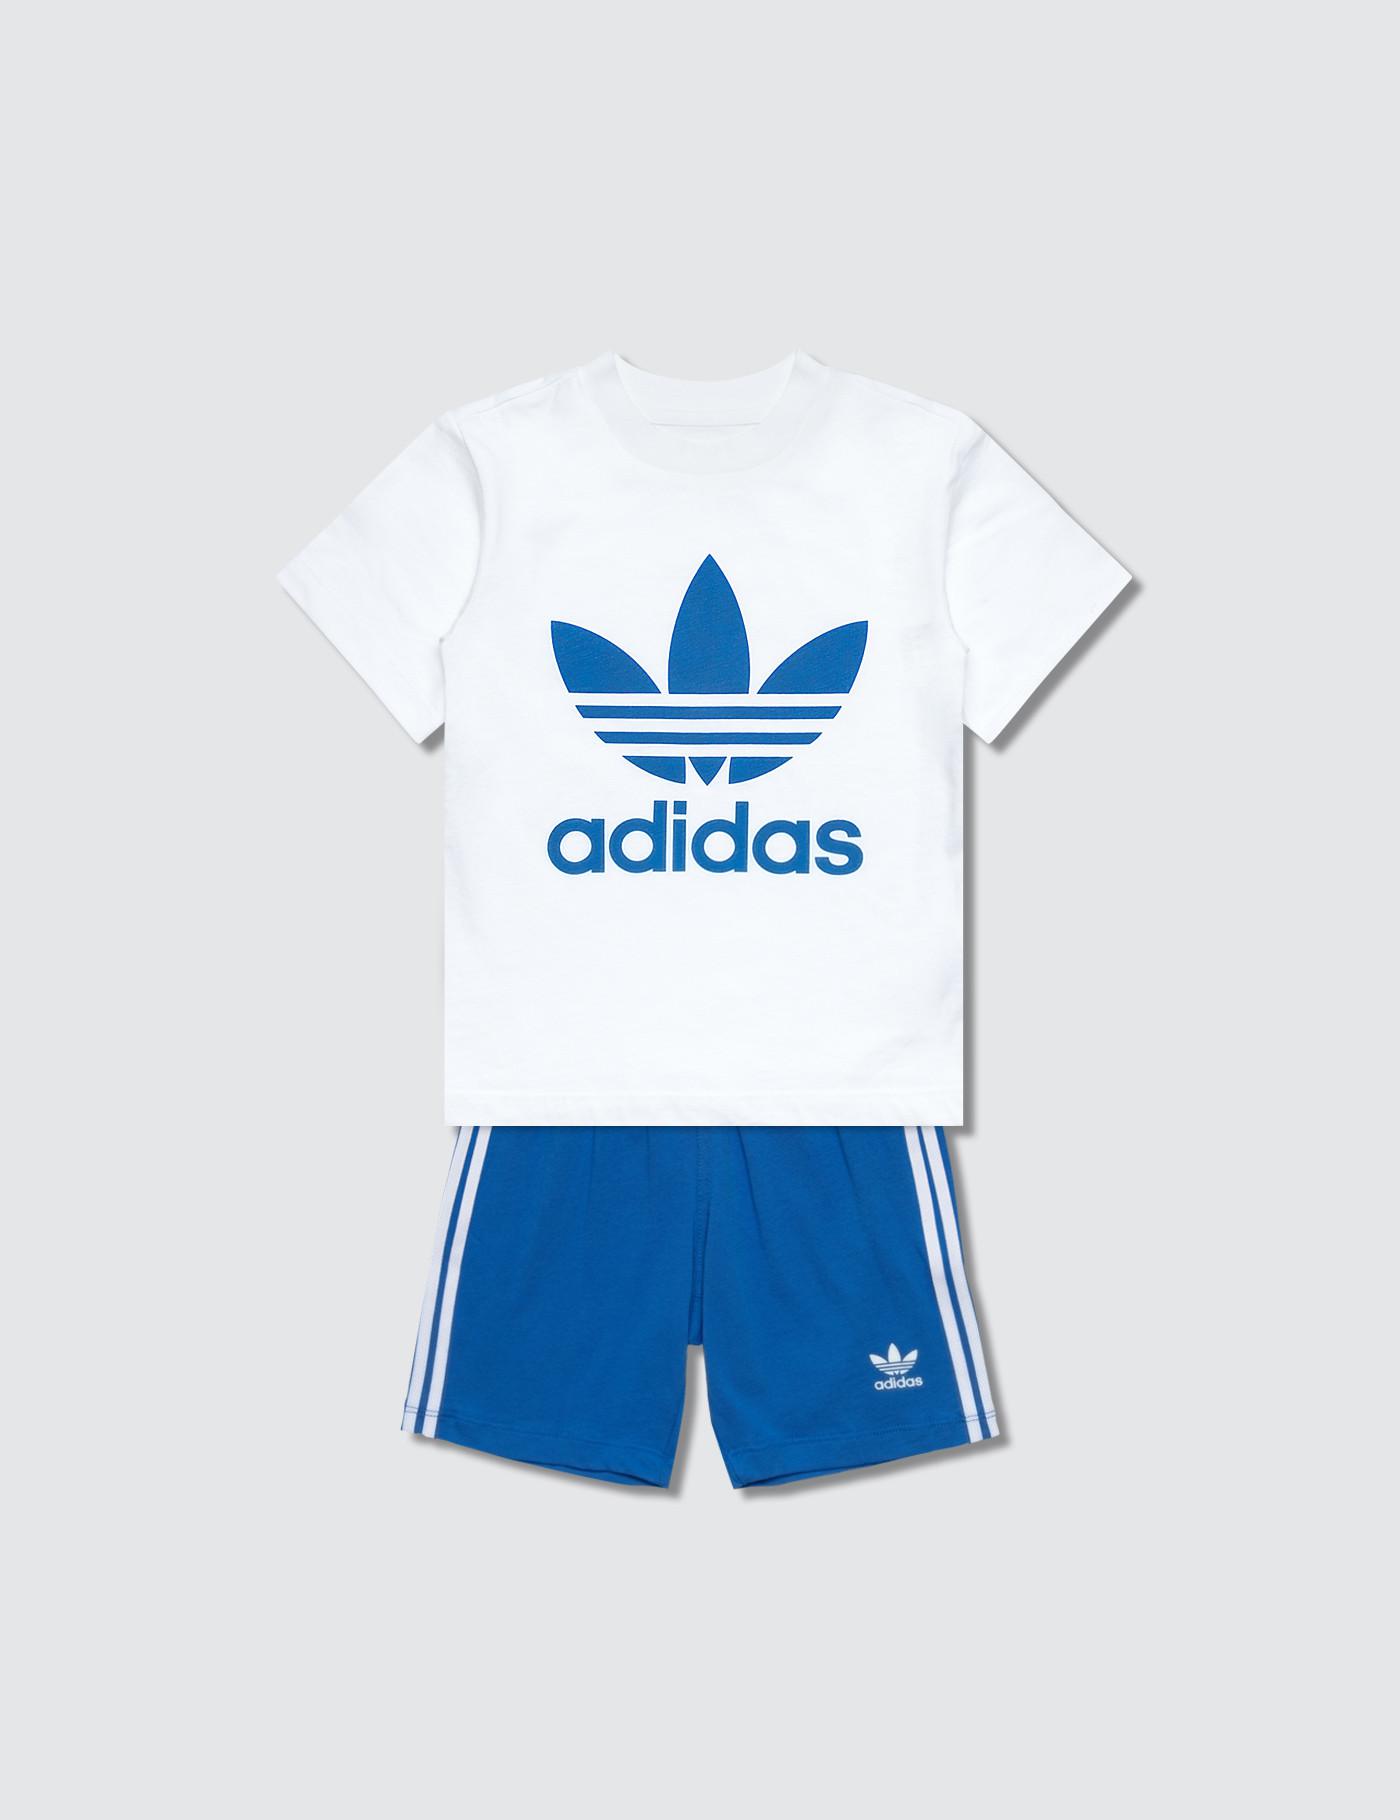 adidas shorts and top set